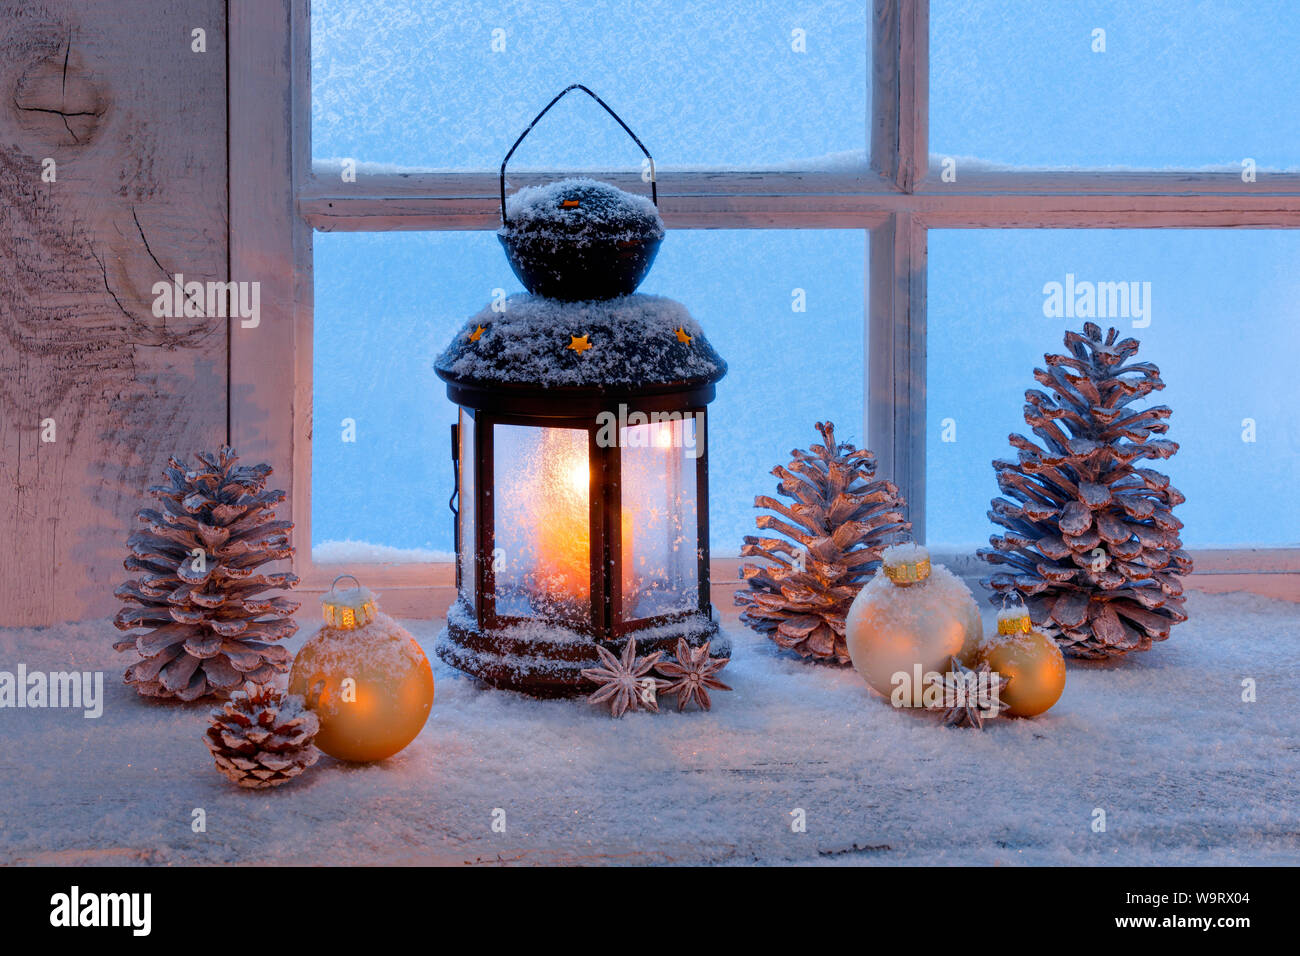 Laterne mit Weihnachtsdekoration auf Fensterbrett, 30063382 Stock Photo -  Alamy